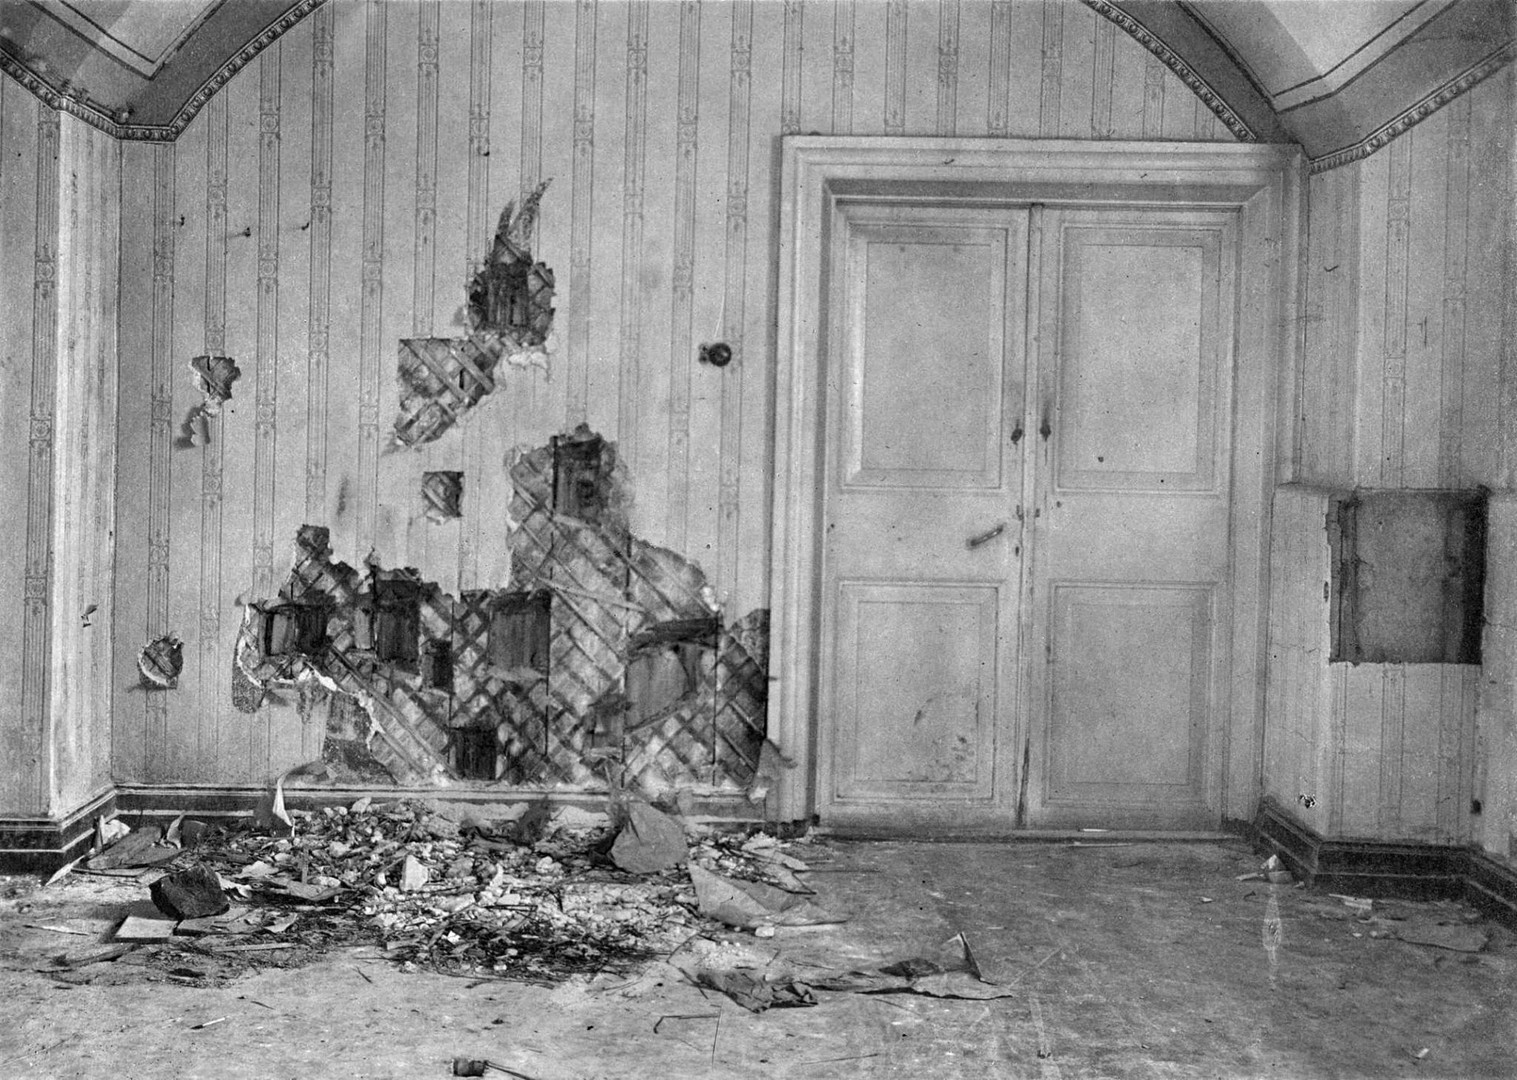 Mesto streljanja v Ipatjevi hiši, kjer je bila carska družina brutalno umorjena. 1918.